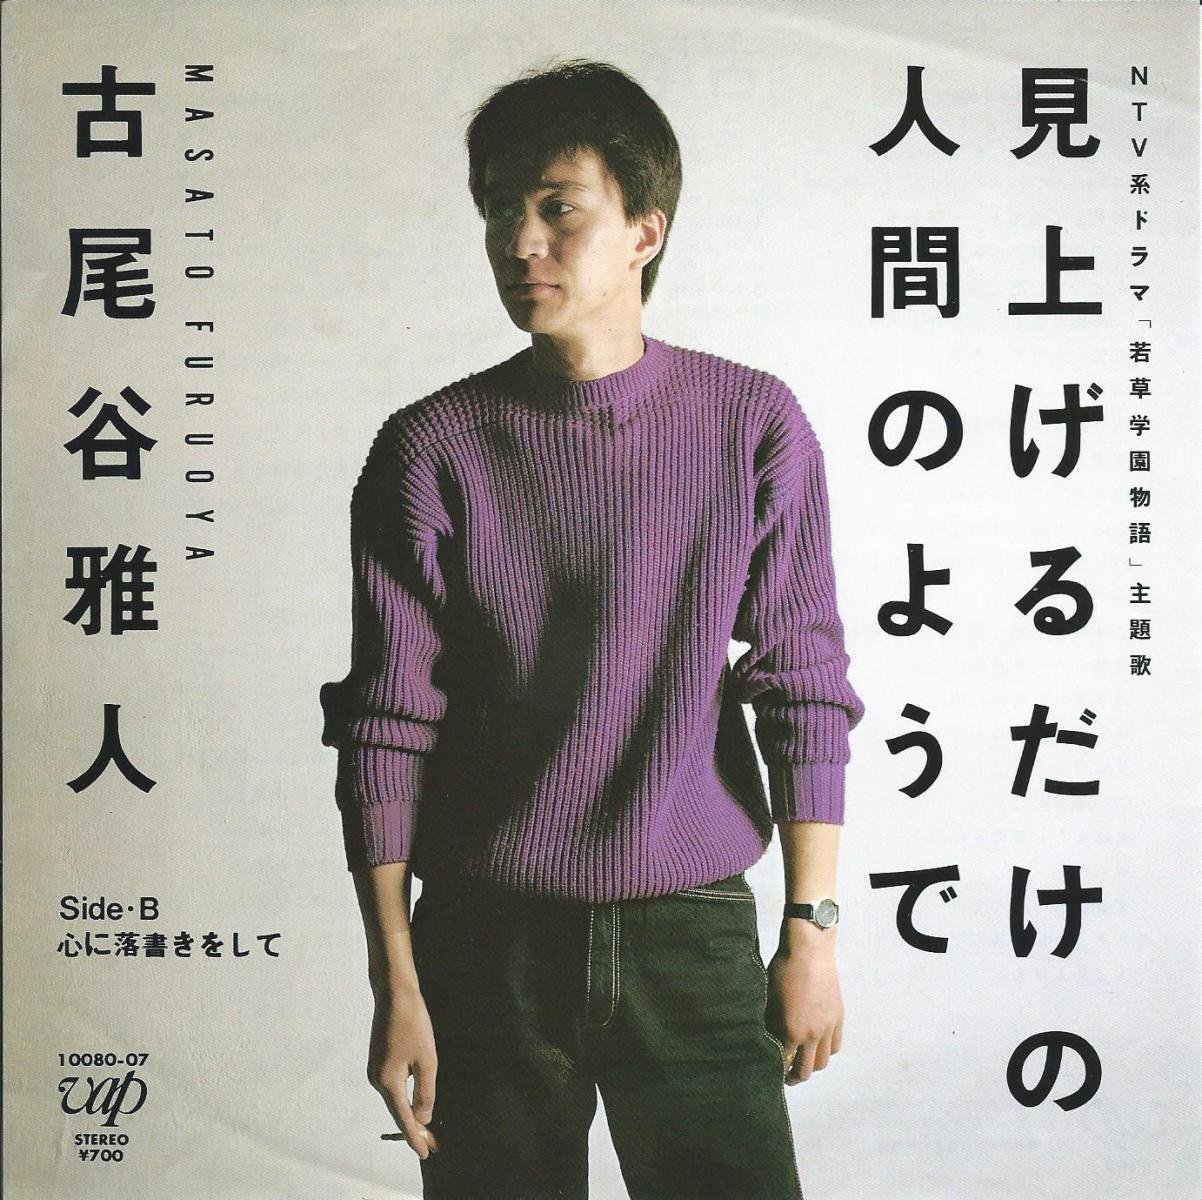 古尾谷雅人 MASATO FURUOYA / 見上げるだけの人間のようで / 心に落書きをして (7) - HIP TANK RECORDS